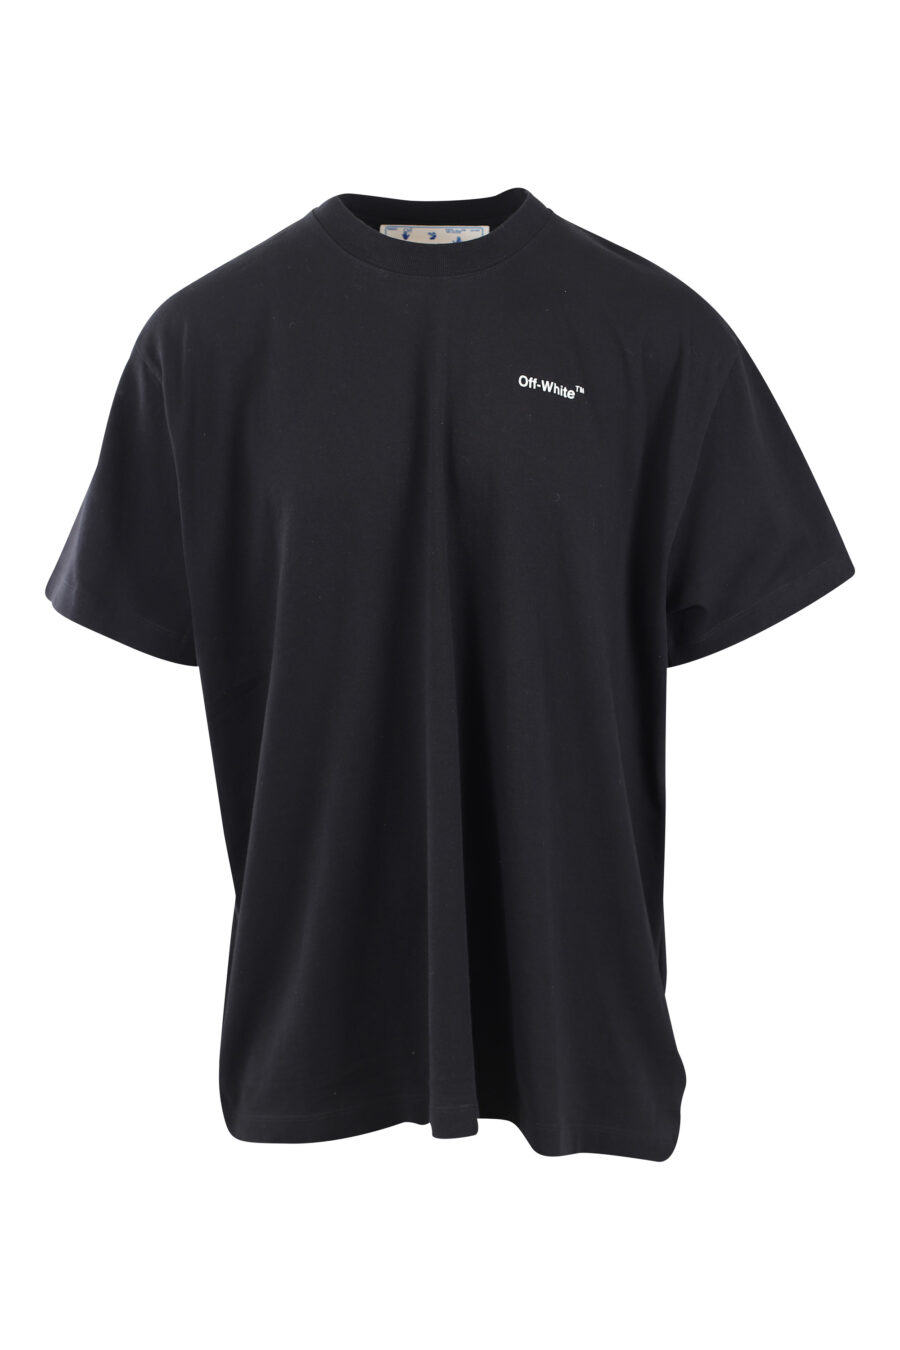 Camiseta negra con maxilogo "arrow" silueta blanco - IMG 2569